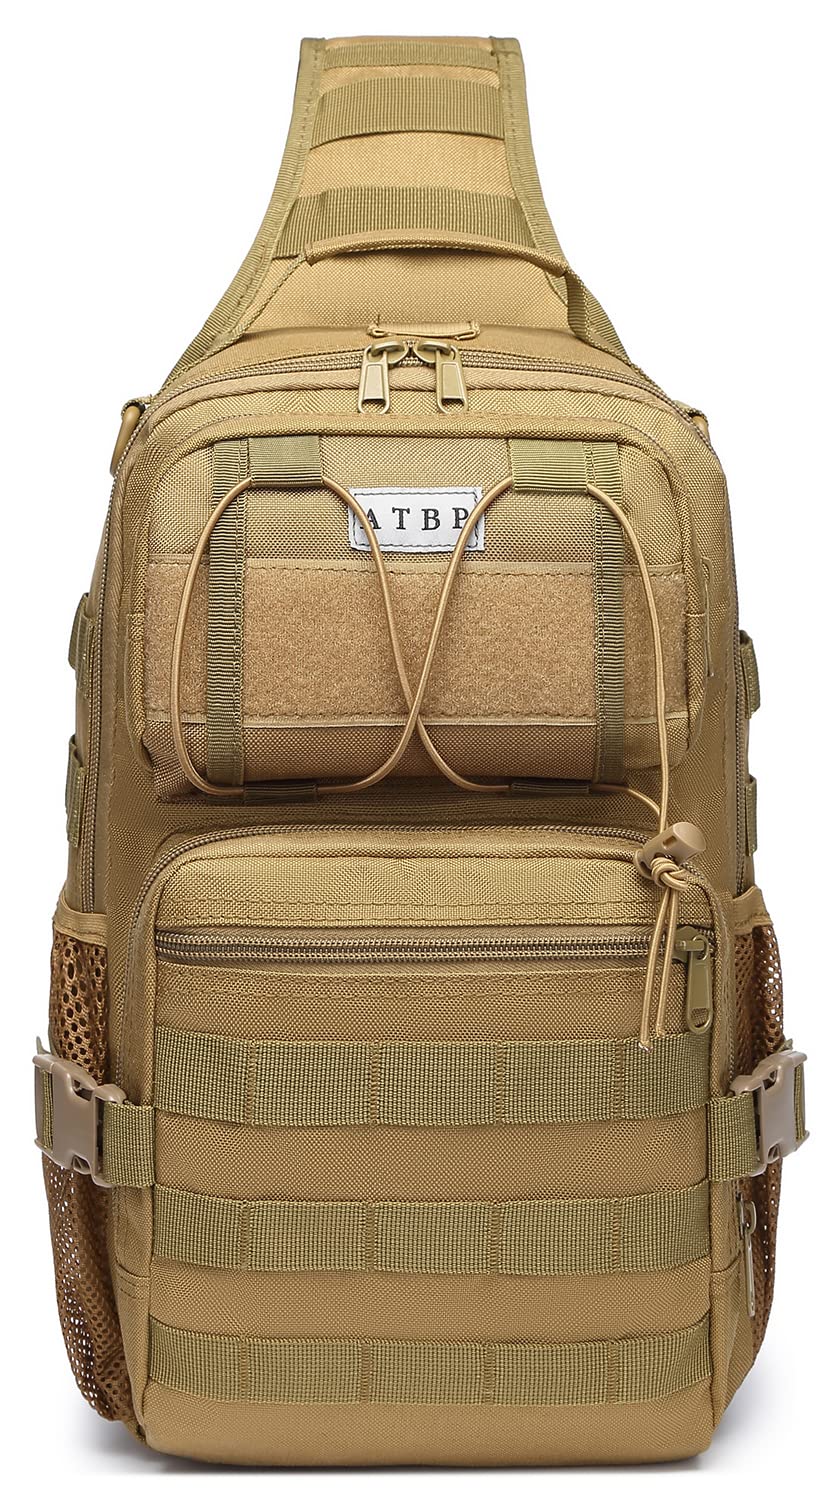 ATBP Tactical Shoulder Bag Backpack Large Sling Bag 20L Crossbody Bag Handgun Concealed Carry Chest Bag